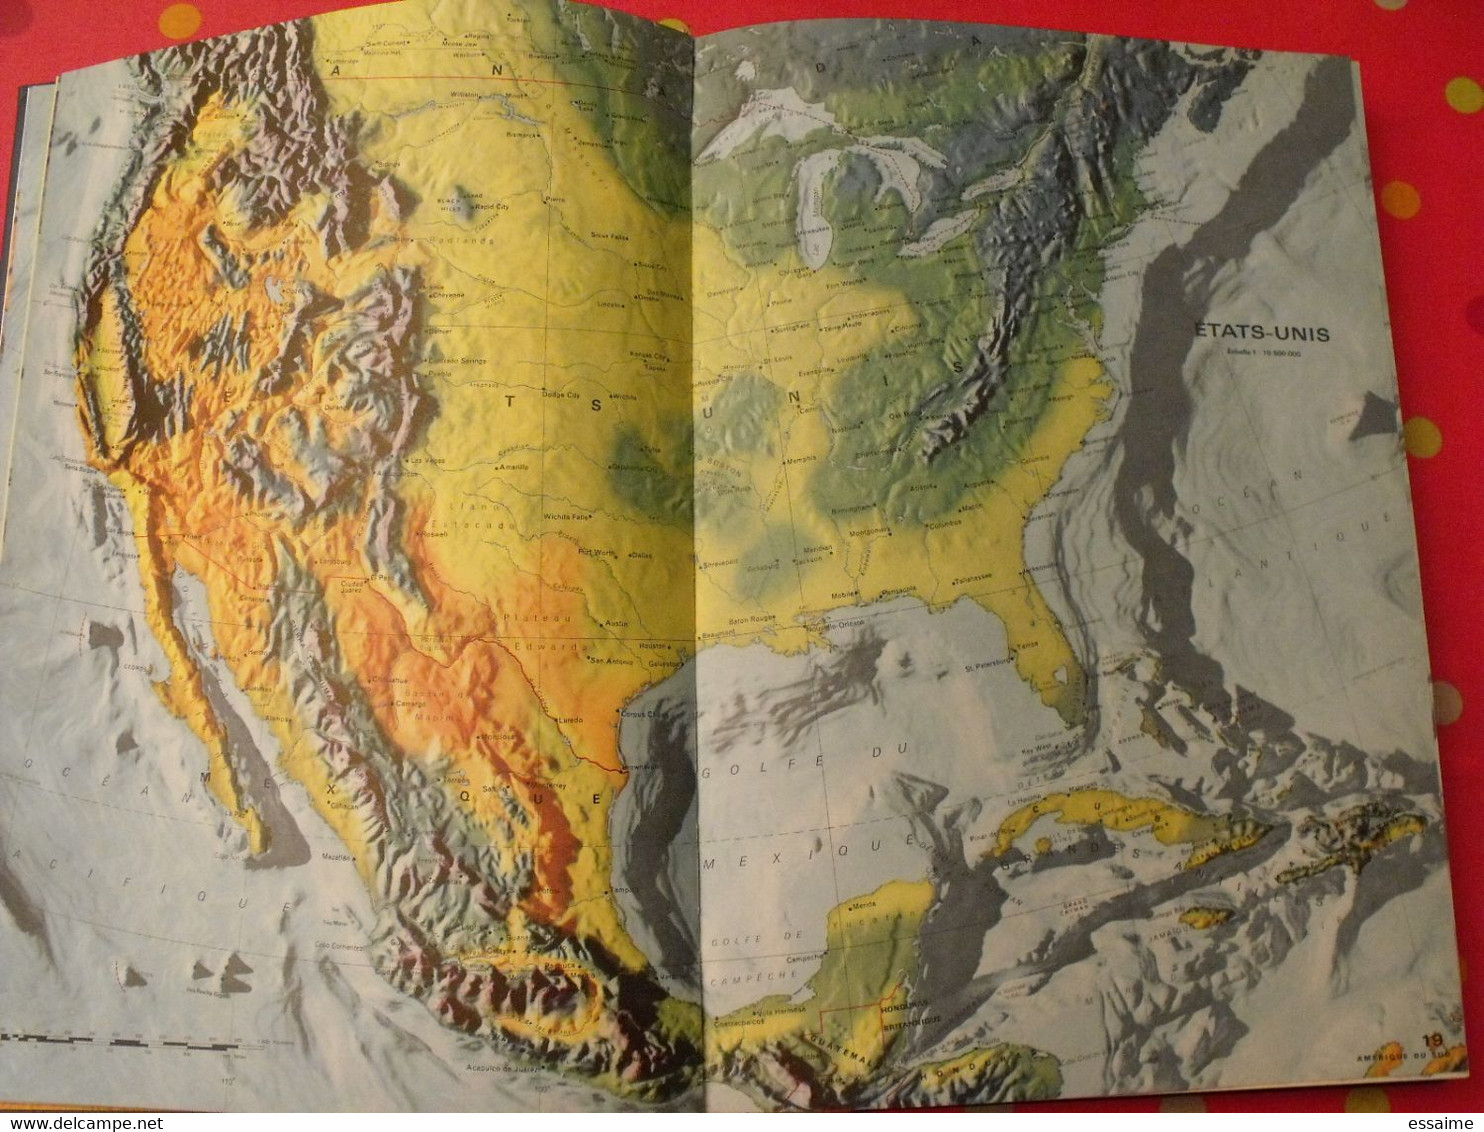 grand atlas mondial. très illustré et grand format. 1962